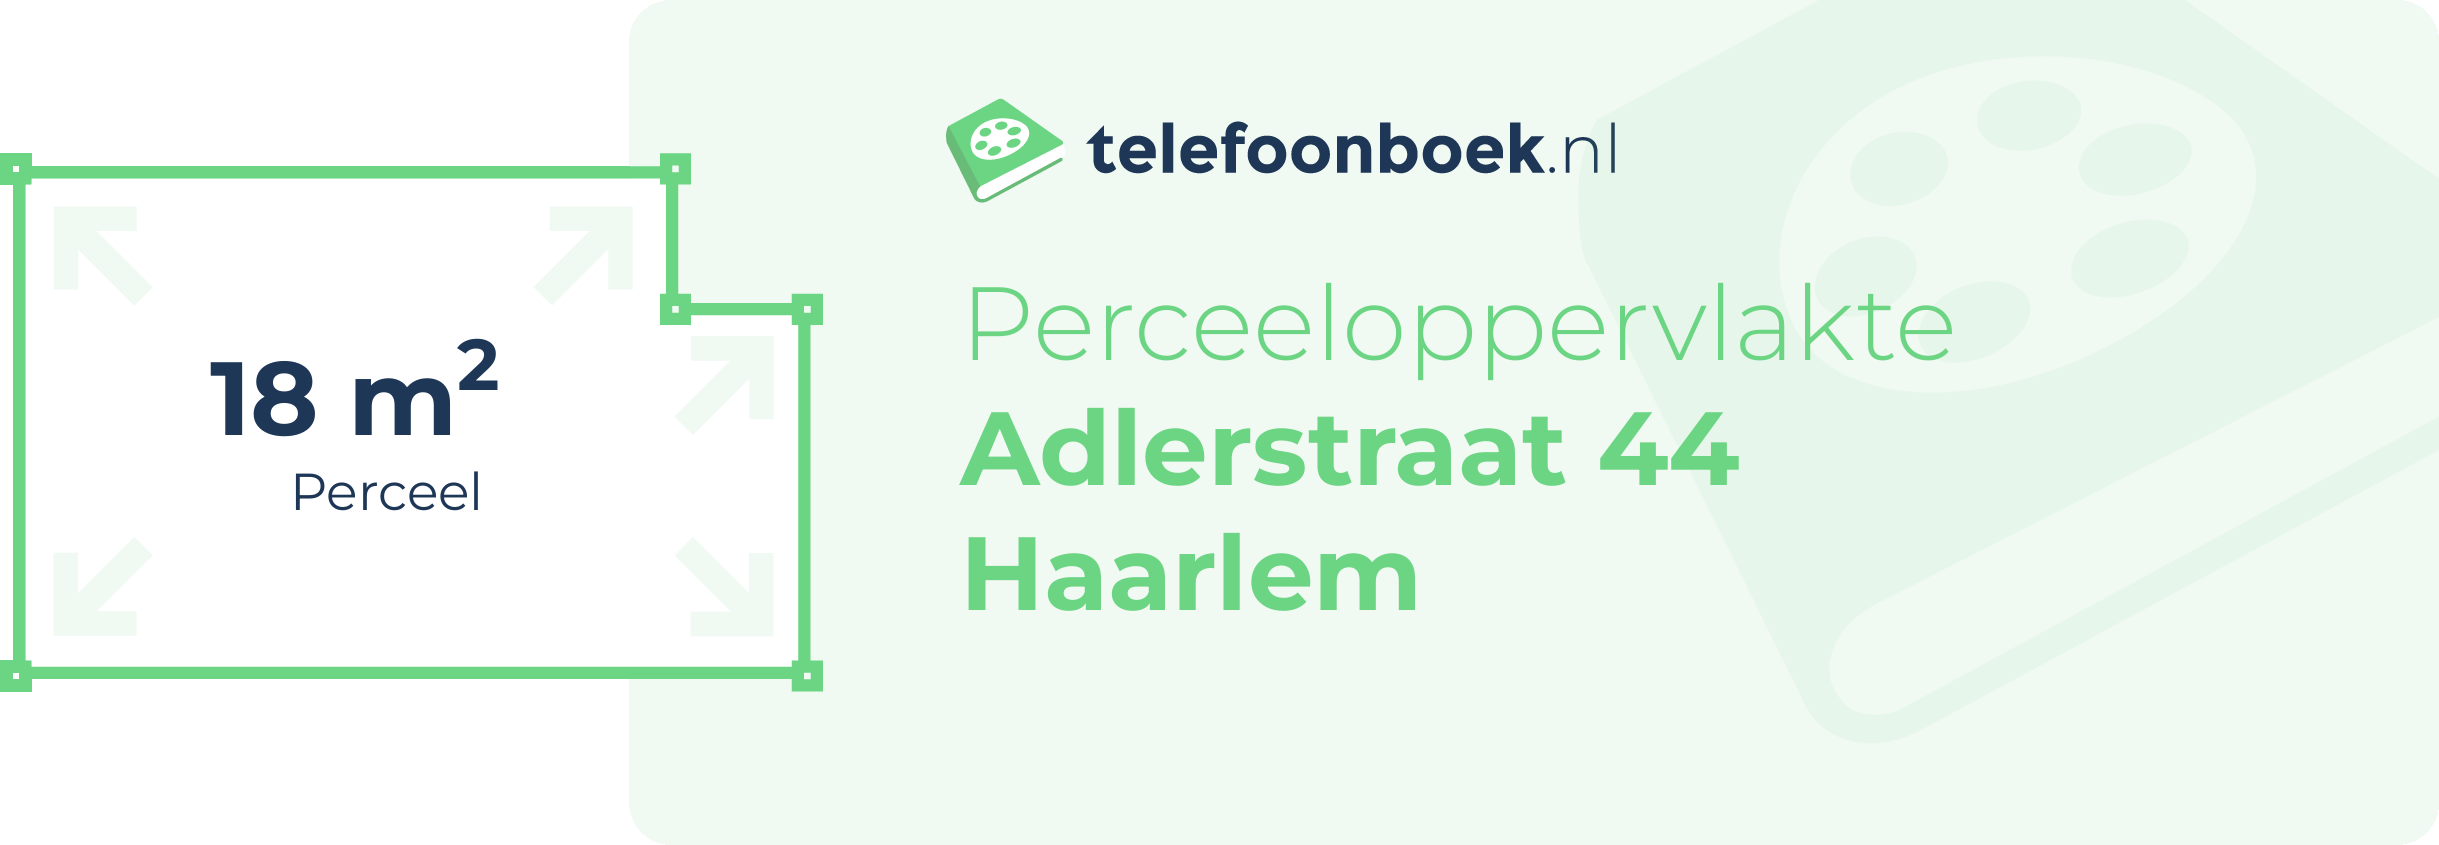 Perceeloppervlakte Adlerstraat 44 Haarlem